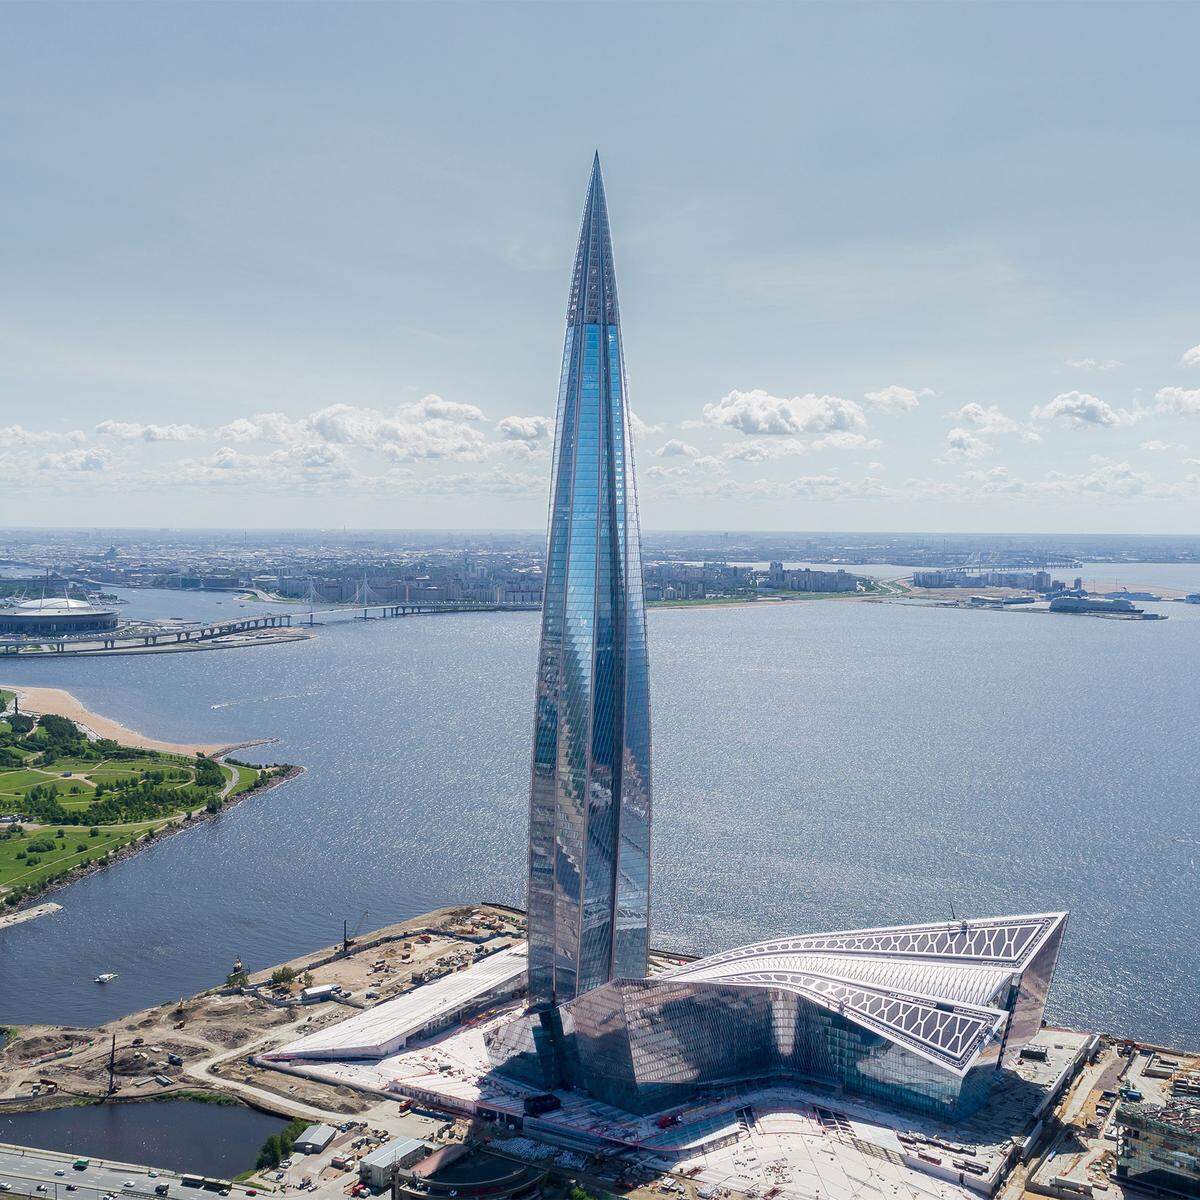 Das Lakhta Center beeindruckte die Jury insbesondere durch seine ungewöhnliche Form. Die äußere Struktur des Gebäudes besteht aus fünf Flügeln, die sich um fast 90 Grad drehen. Diese Drehung erzeugt einen dynamischen Eindruck und verleiht dem Gebäude die Form einer lodernden Flamme. Angelehnt an das Logo von Gazprom, dem Erdgasproduzenten, dem der Turm als neuer Hauptsitz dient.